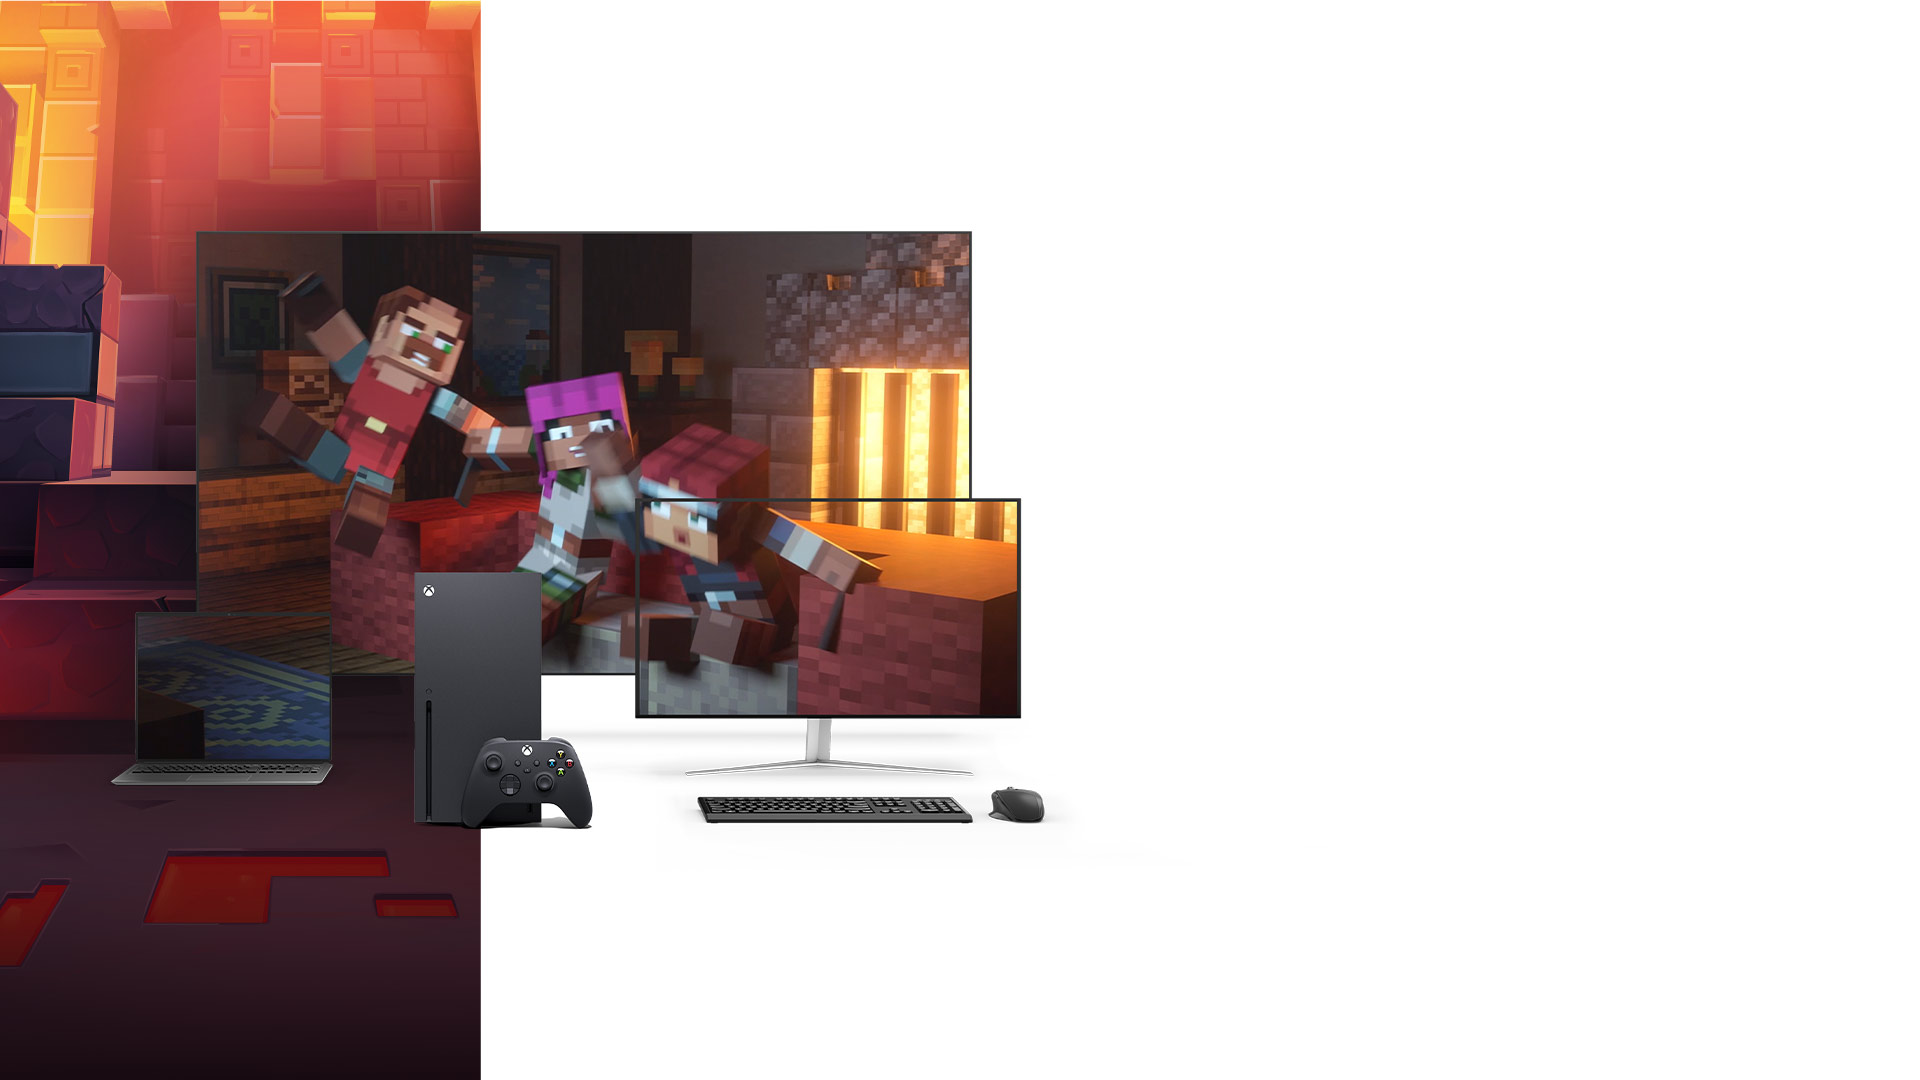 La consola Xbox Series X junto a un portátil, un monitor de PC y un televisor en el que se ven imágenes de Minecraft Dungeons